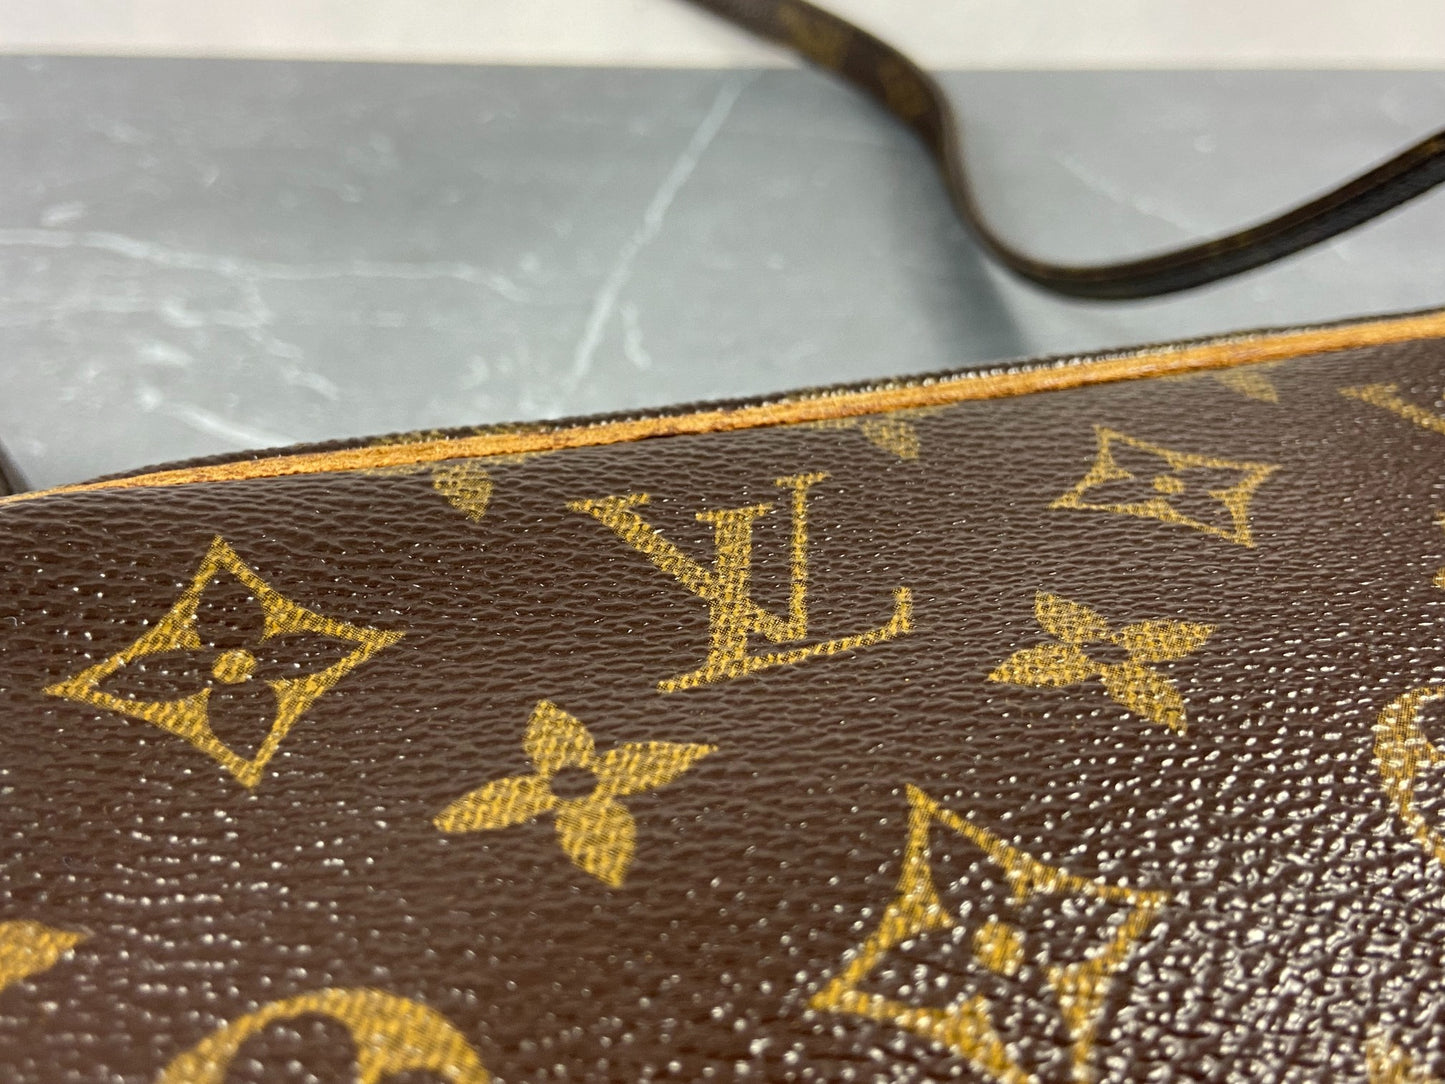 Louis Vuitton Marly Bandoulière Shoulder Bag Monogram Canvas